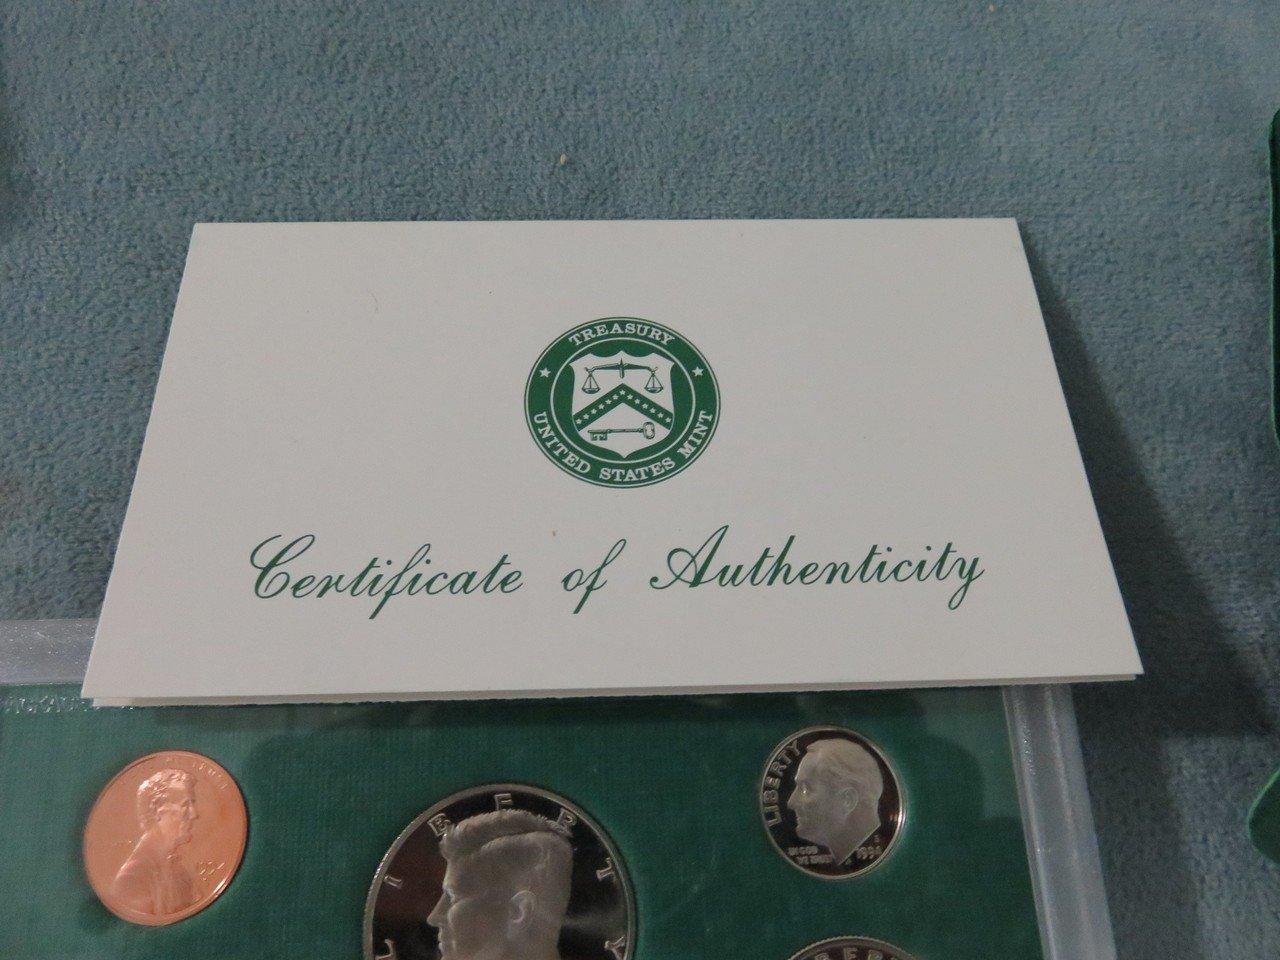 1976 & 1994 US Mint Proof Sets